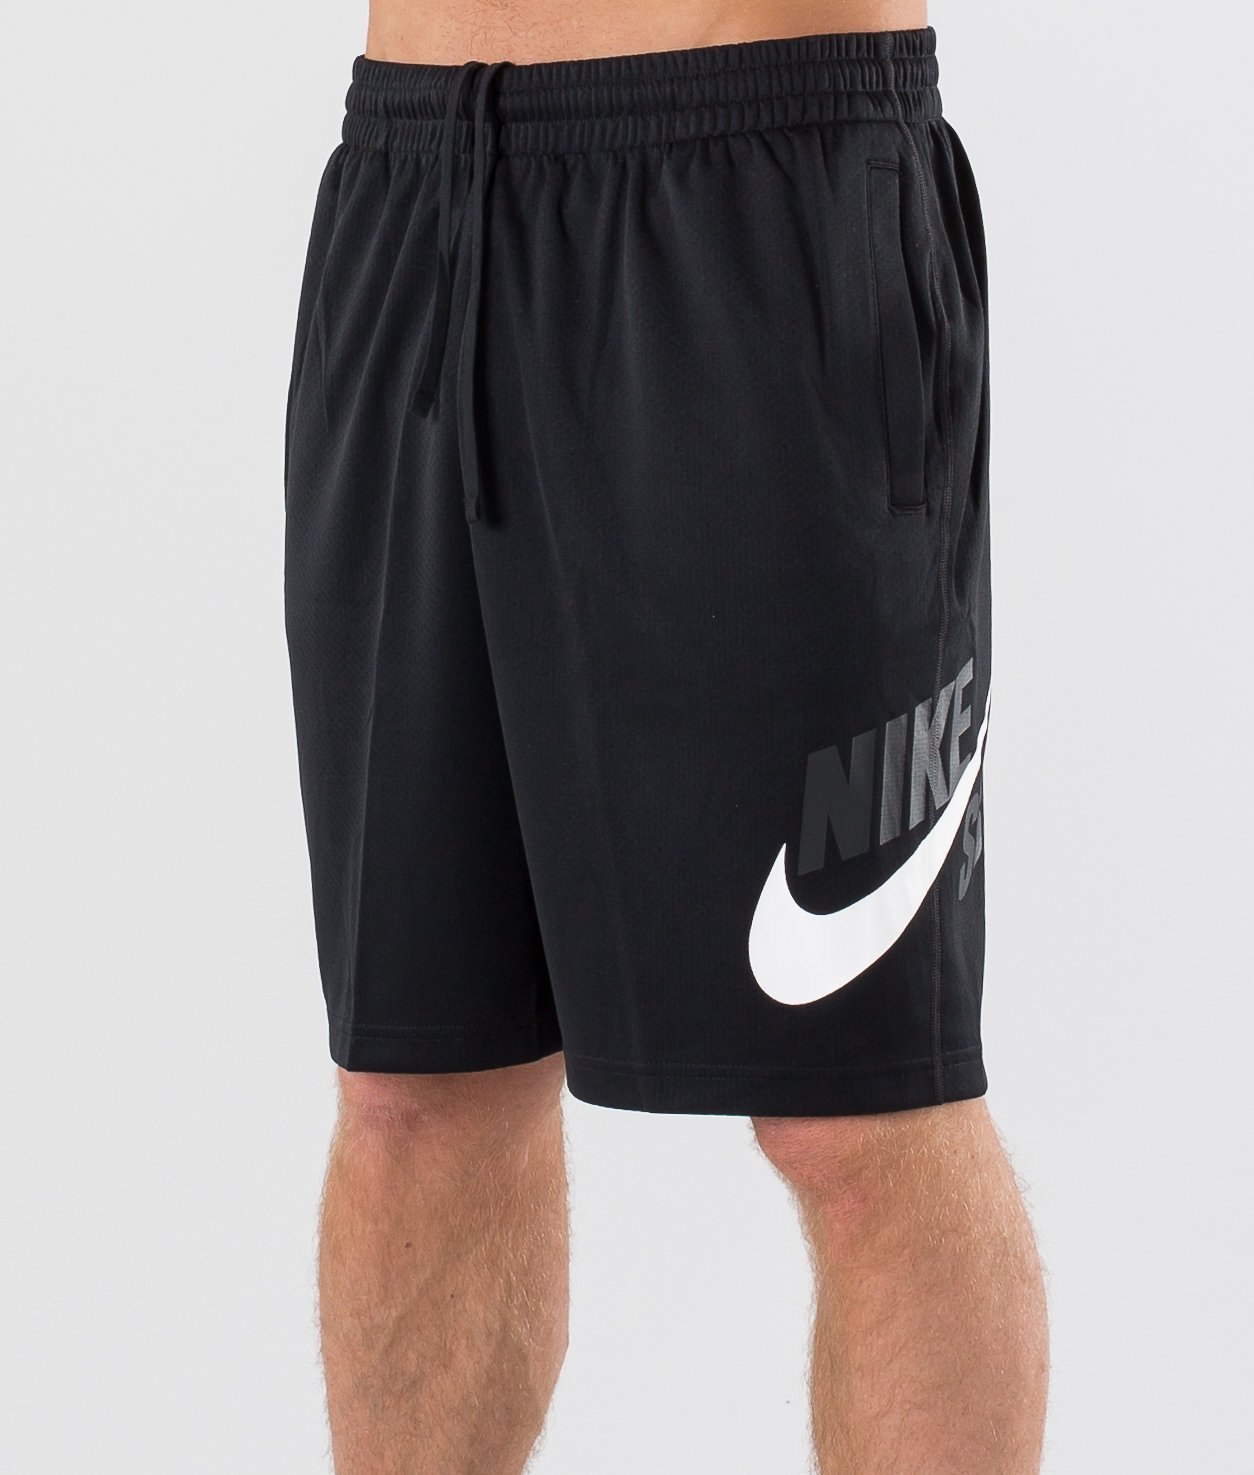 Черные шорты найк. Nike Dri-Fit hbr short 2.0, Black/White. Шорты найк Nike Dry. Шорты найк Dri Fit. Шорты Nike hbr.